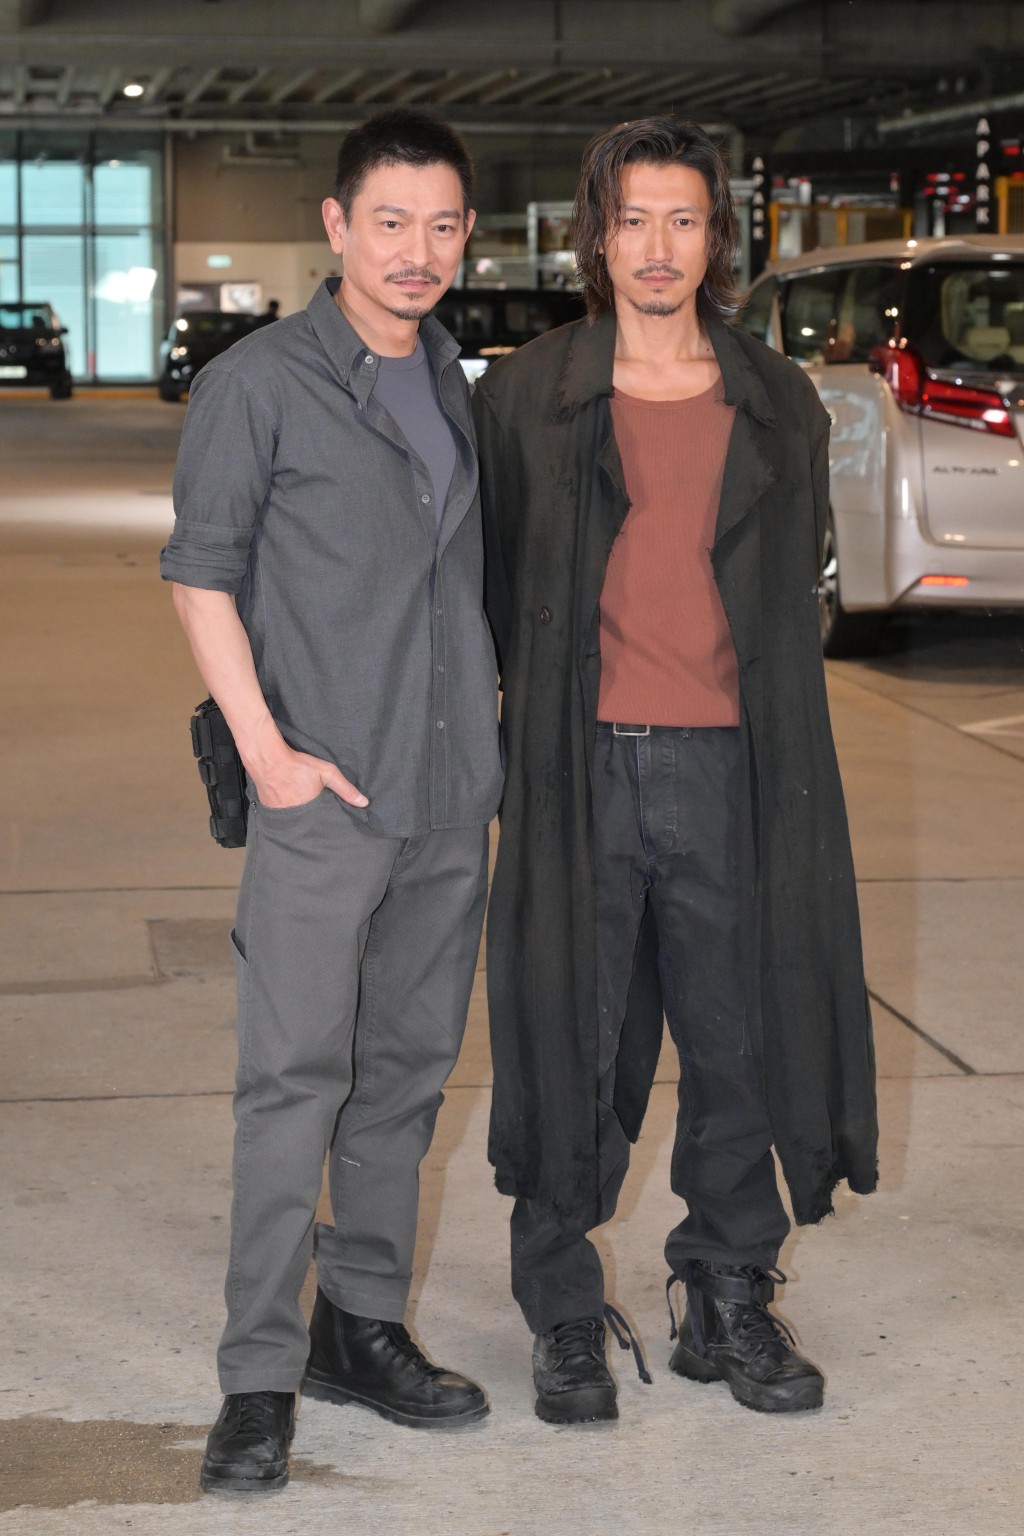 去年尾，謝霆鋒在電影《怒火漫延》與劉德華合作。